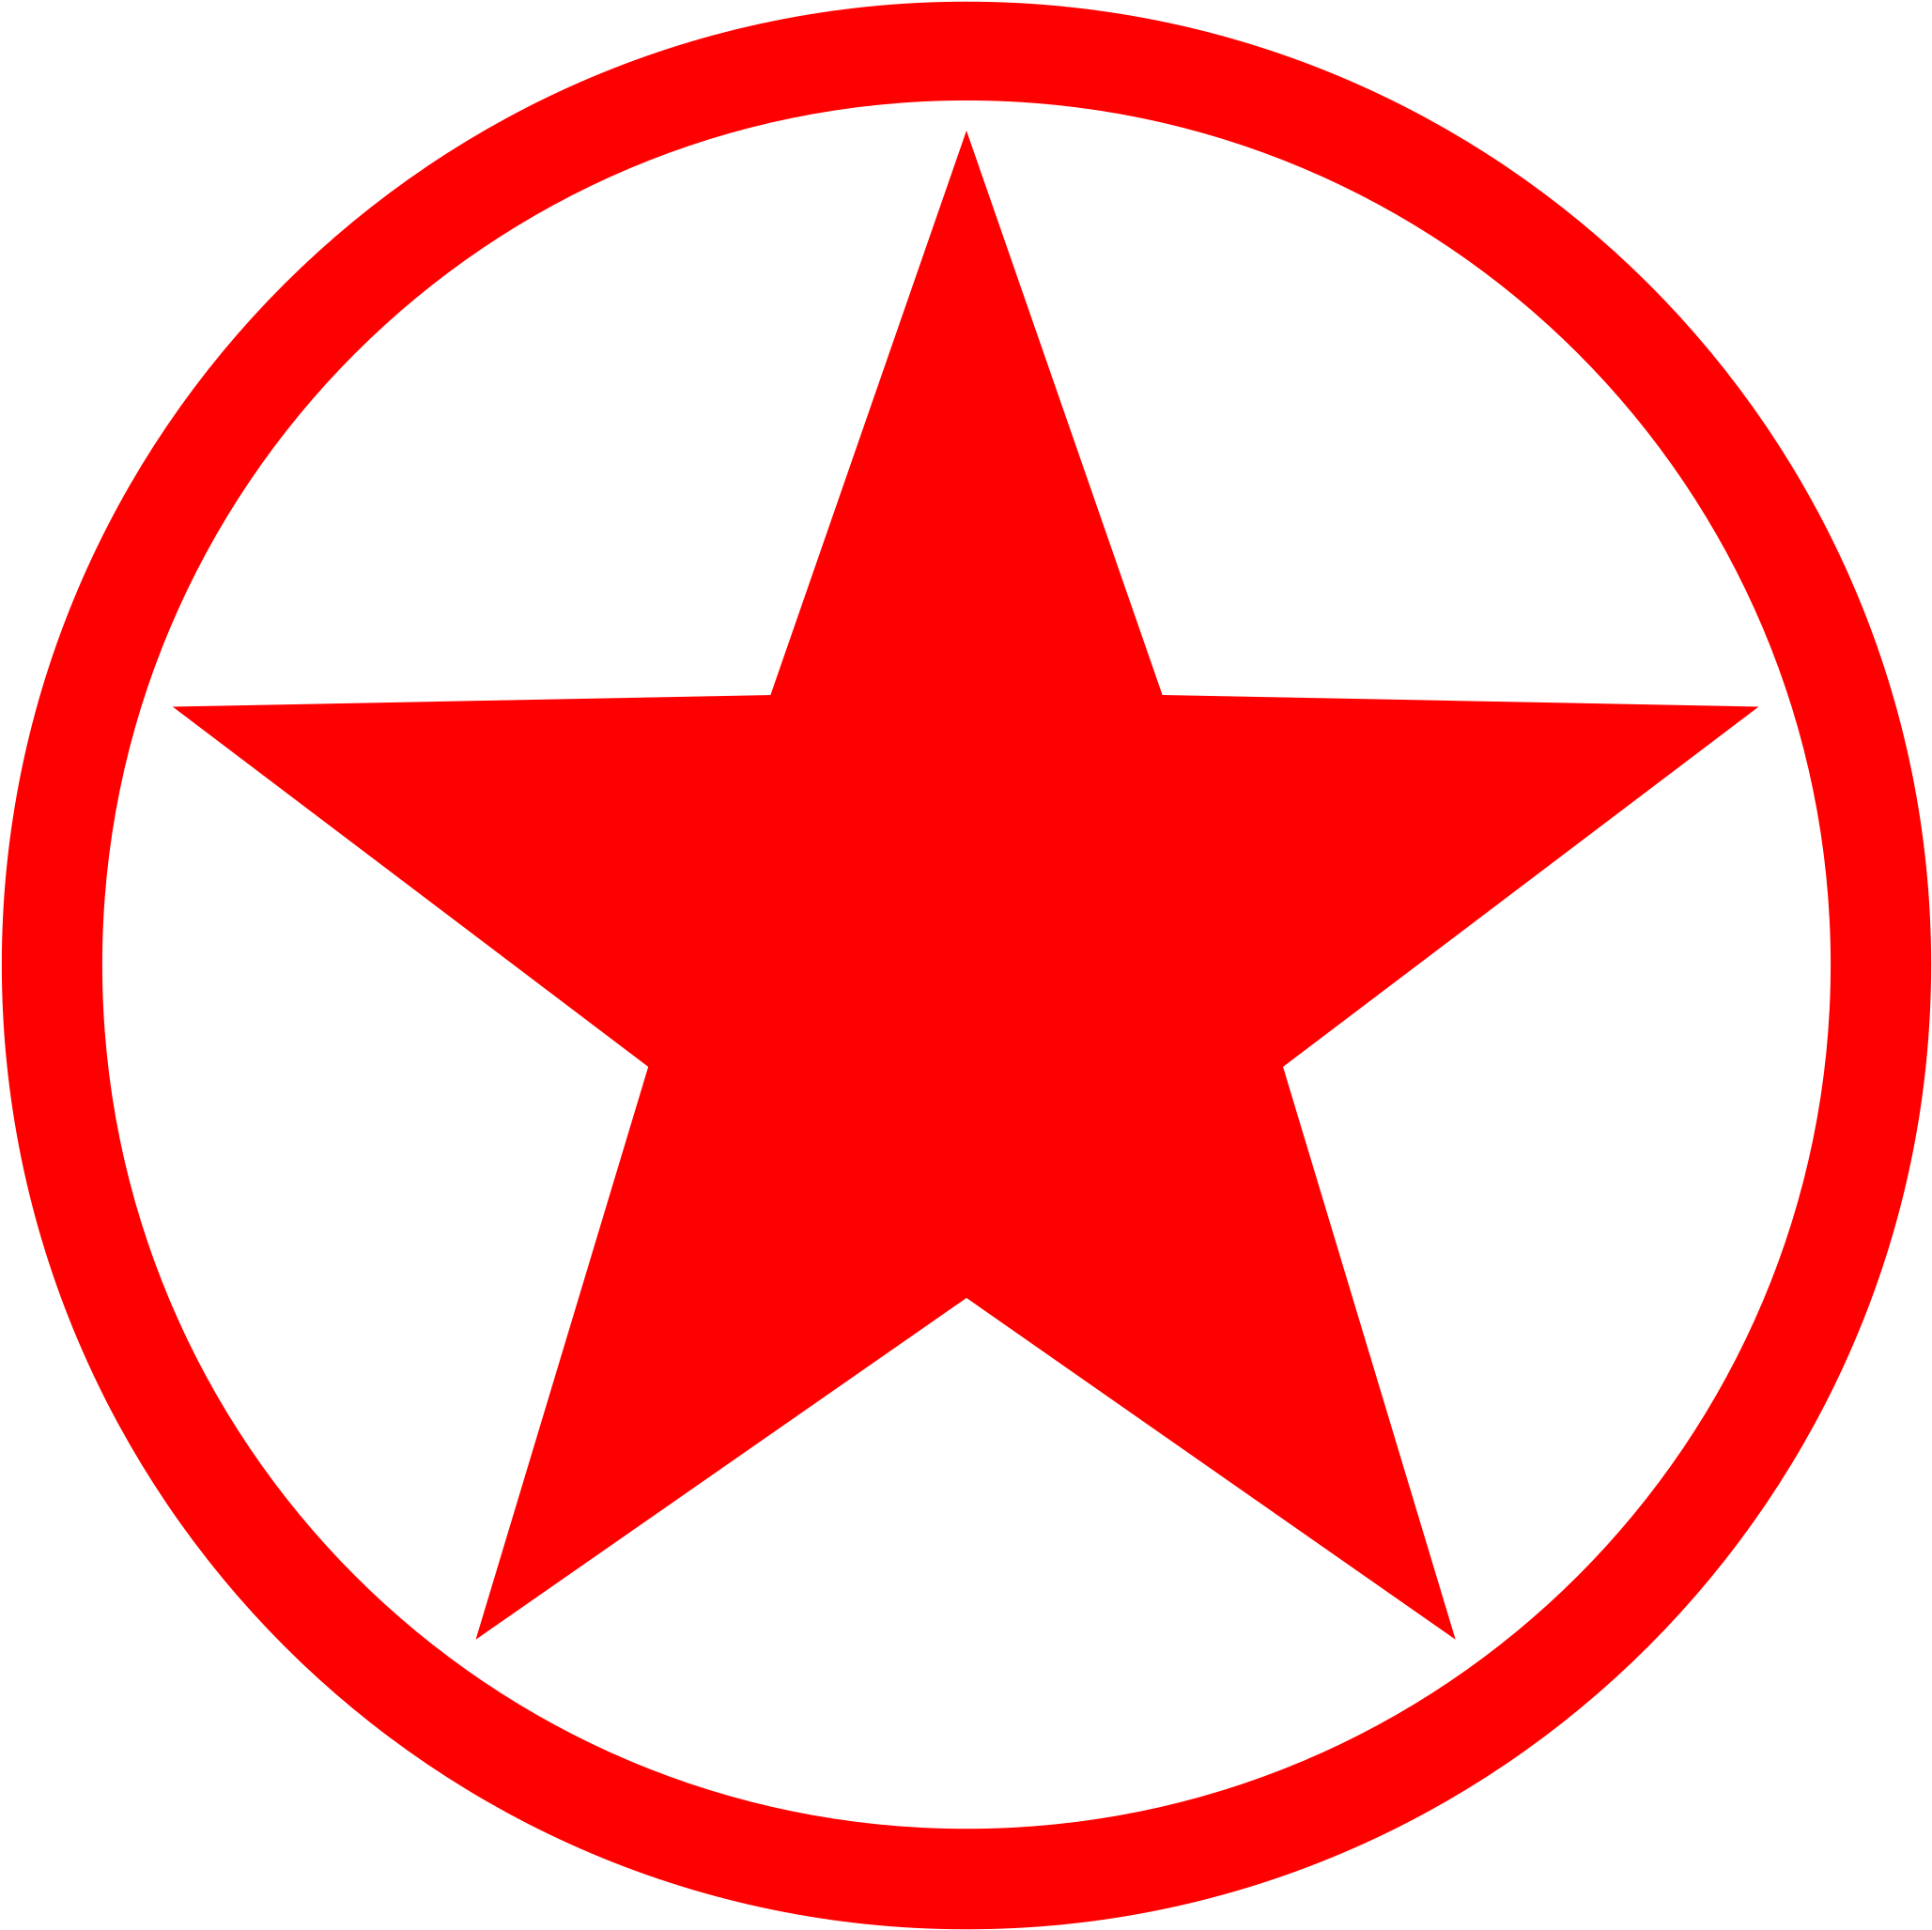 Вб звезда. Звезда в круге. Красная звезда в круге. Значок Звездочка. Логотип звезда в круге.